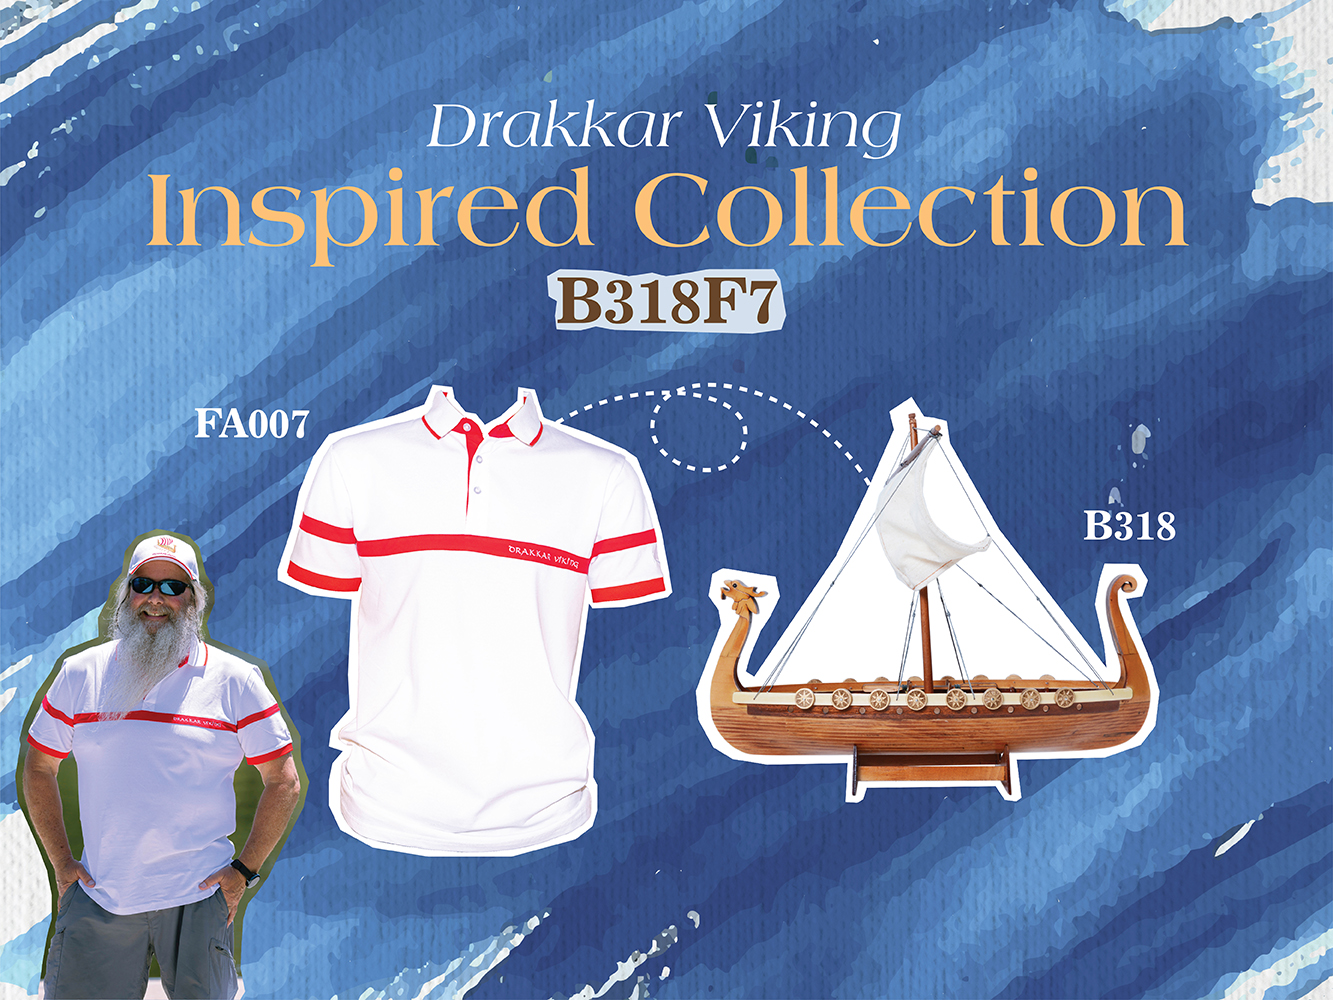 B318F7 Drakkar Viking Combo: A Model and Polo Shirt Set B318F7L01.jpg